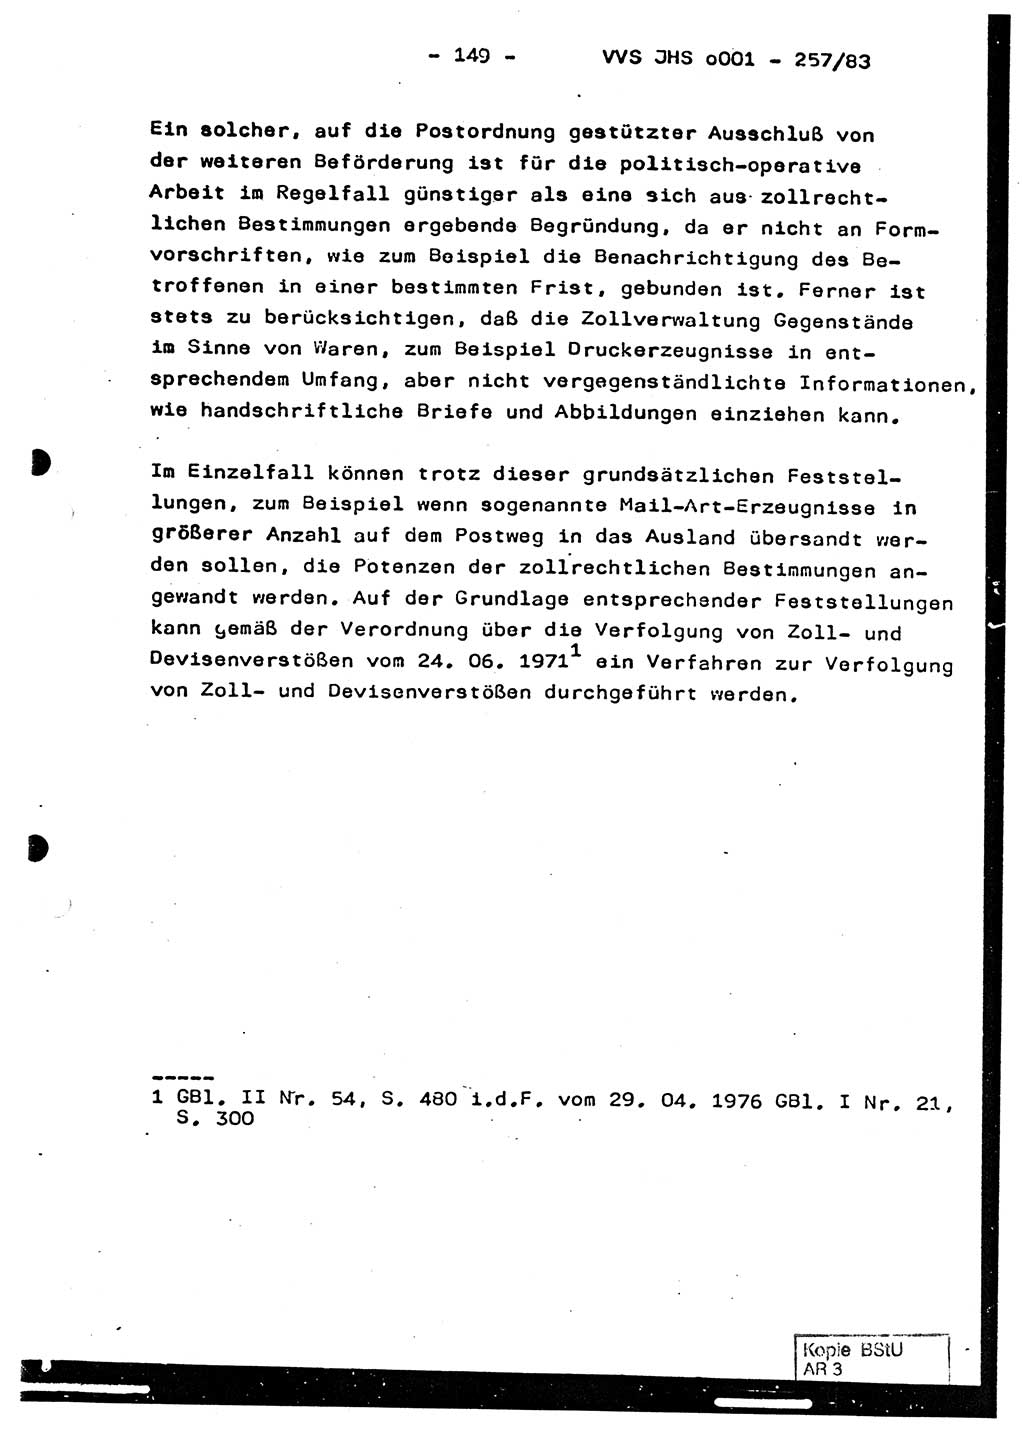 Dissertation, Oberst Helmut Lubas (BV Mdg.), Oberstleutnant Manfred Eschberger (HA IX), Oberleutnant Hans-Jürgen Ludwig (JHS), Ministerium für Staatssicherheit (MfS) [Deutsche Demokratische Republik (DDR)], Juristische Hochschule (JHS), Vertrauliche Verschlußsache (VVS) o001-257/83, Potsdam 1983, Seite 149 (Diss. MfS DDR JHS VVS o001-257/83 1983, S. 149)